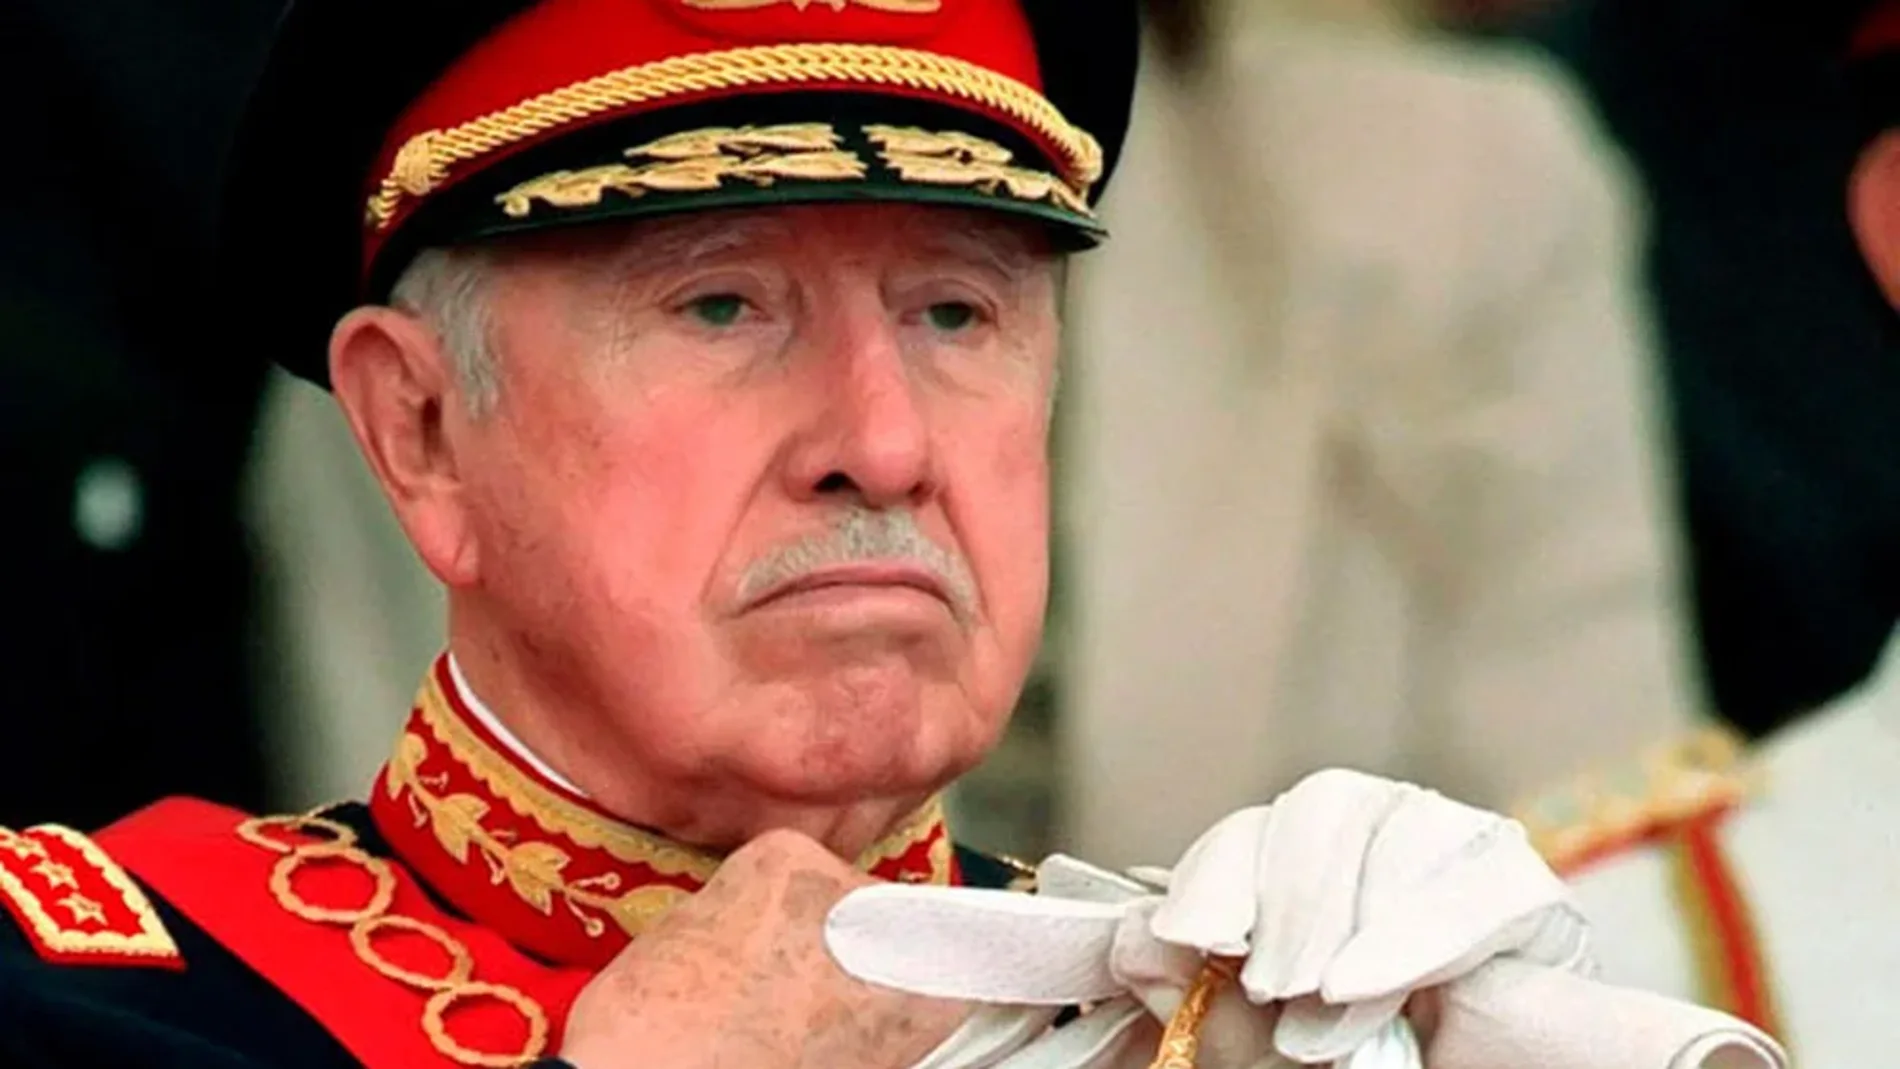 El dictador de Chile, Augusto Pinochet